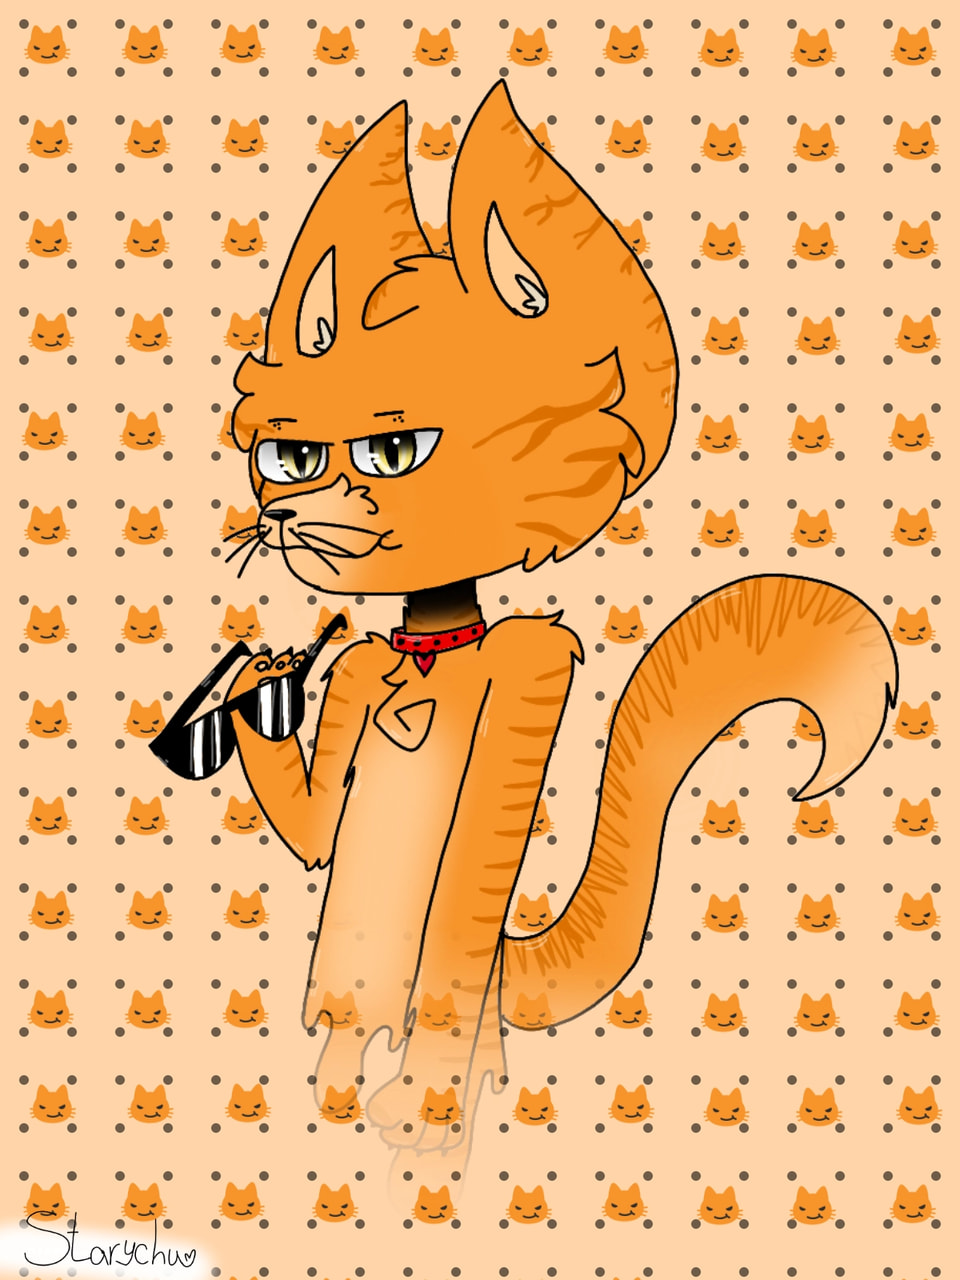 ‪@sonysketch‬ #fridayswithsketch #EmojiChallenge #cat #CatEmoji #orange #orangecat 😼😼😼